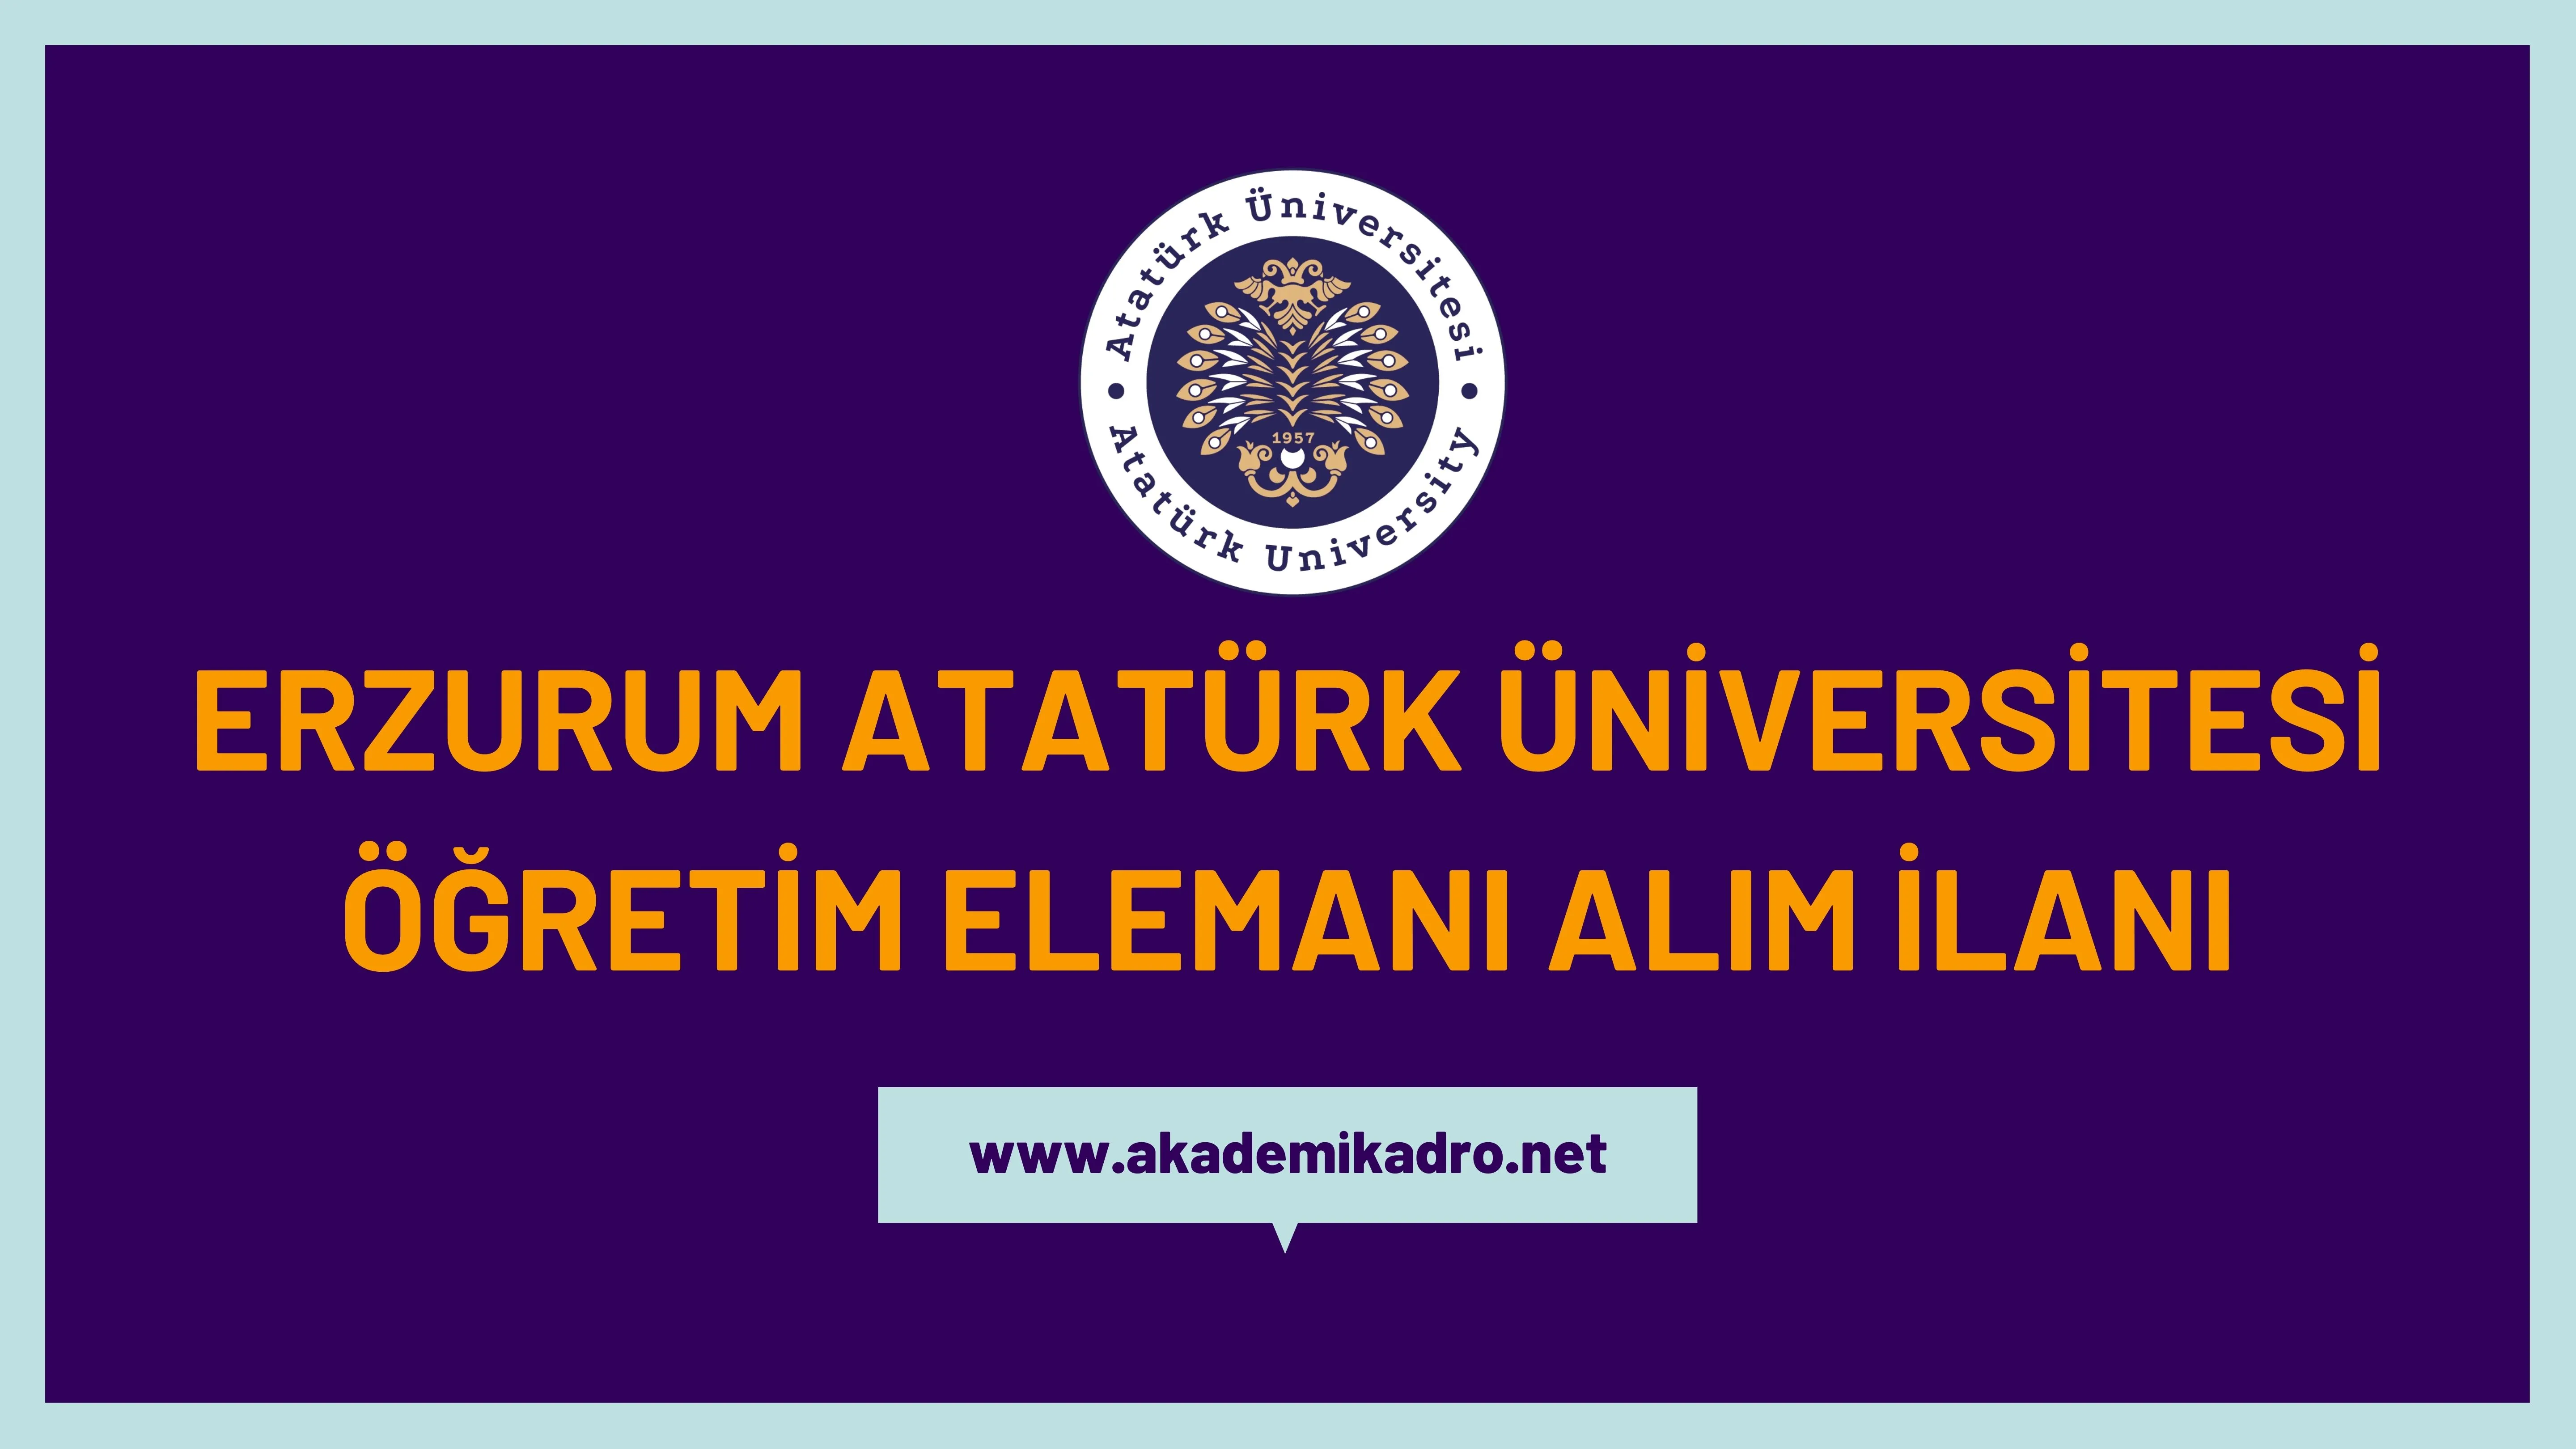 Atatürk Üniversitesi 14 Araştırma görevlisi ve 3 Öğretim görevlisi alacaktır. Son başvuru tarihi 09 Ocak 2023